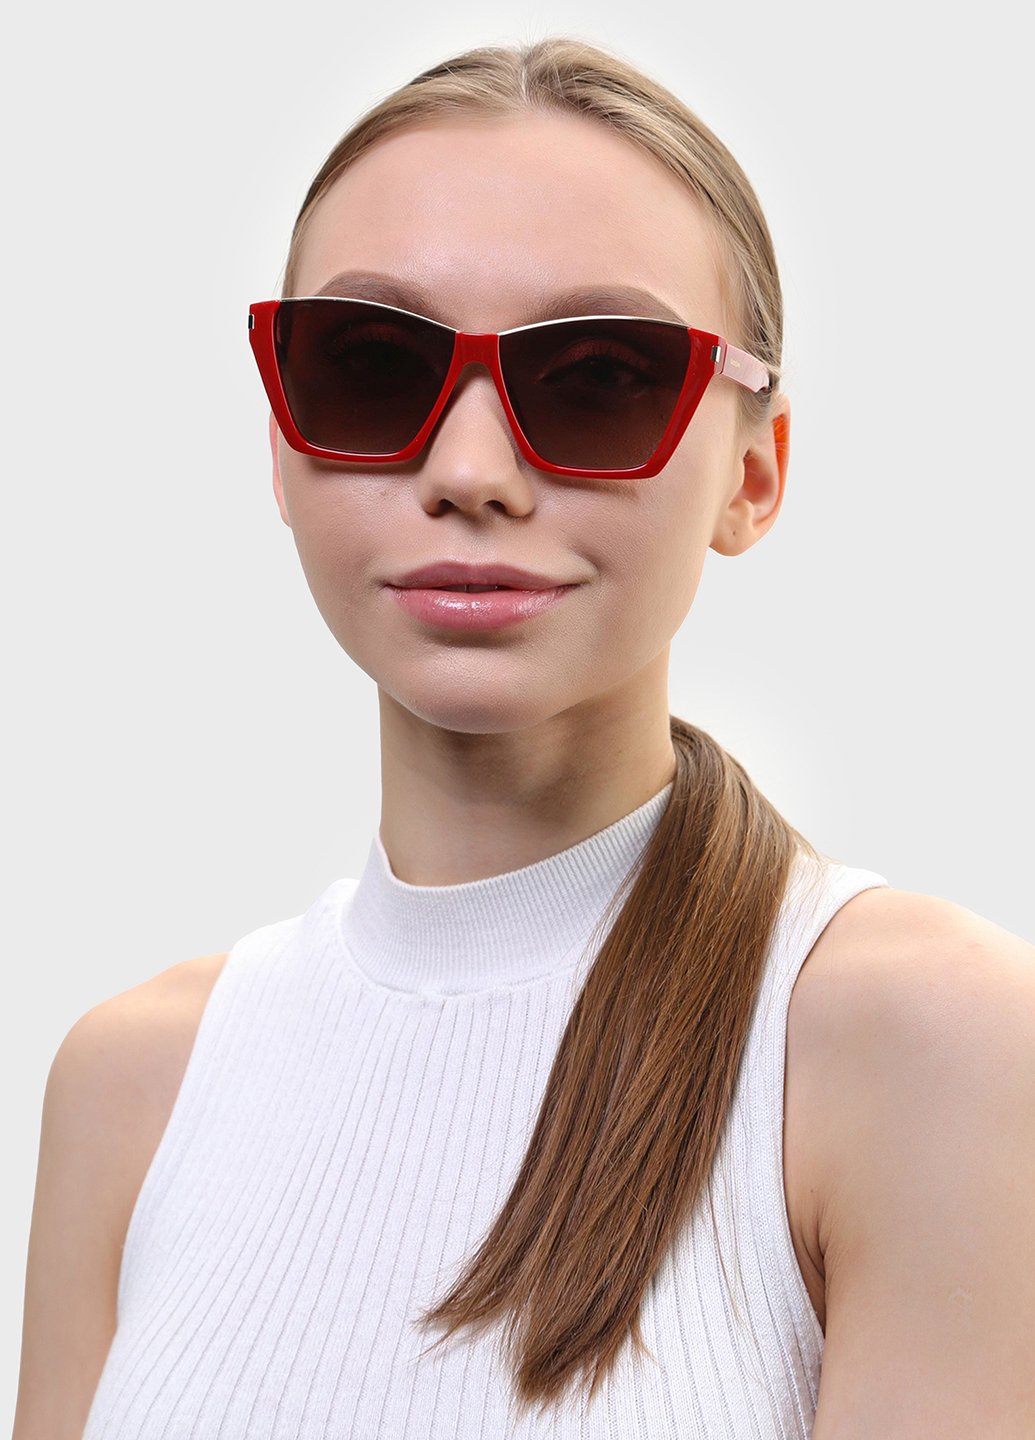 Купить Женские солнцезащитные очки Katrin Jones с поляризацией KJ0858 180042 - Красный в интернет-магазине